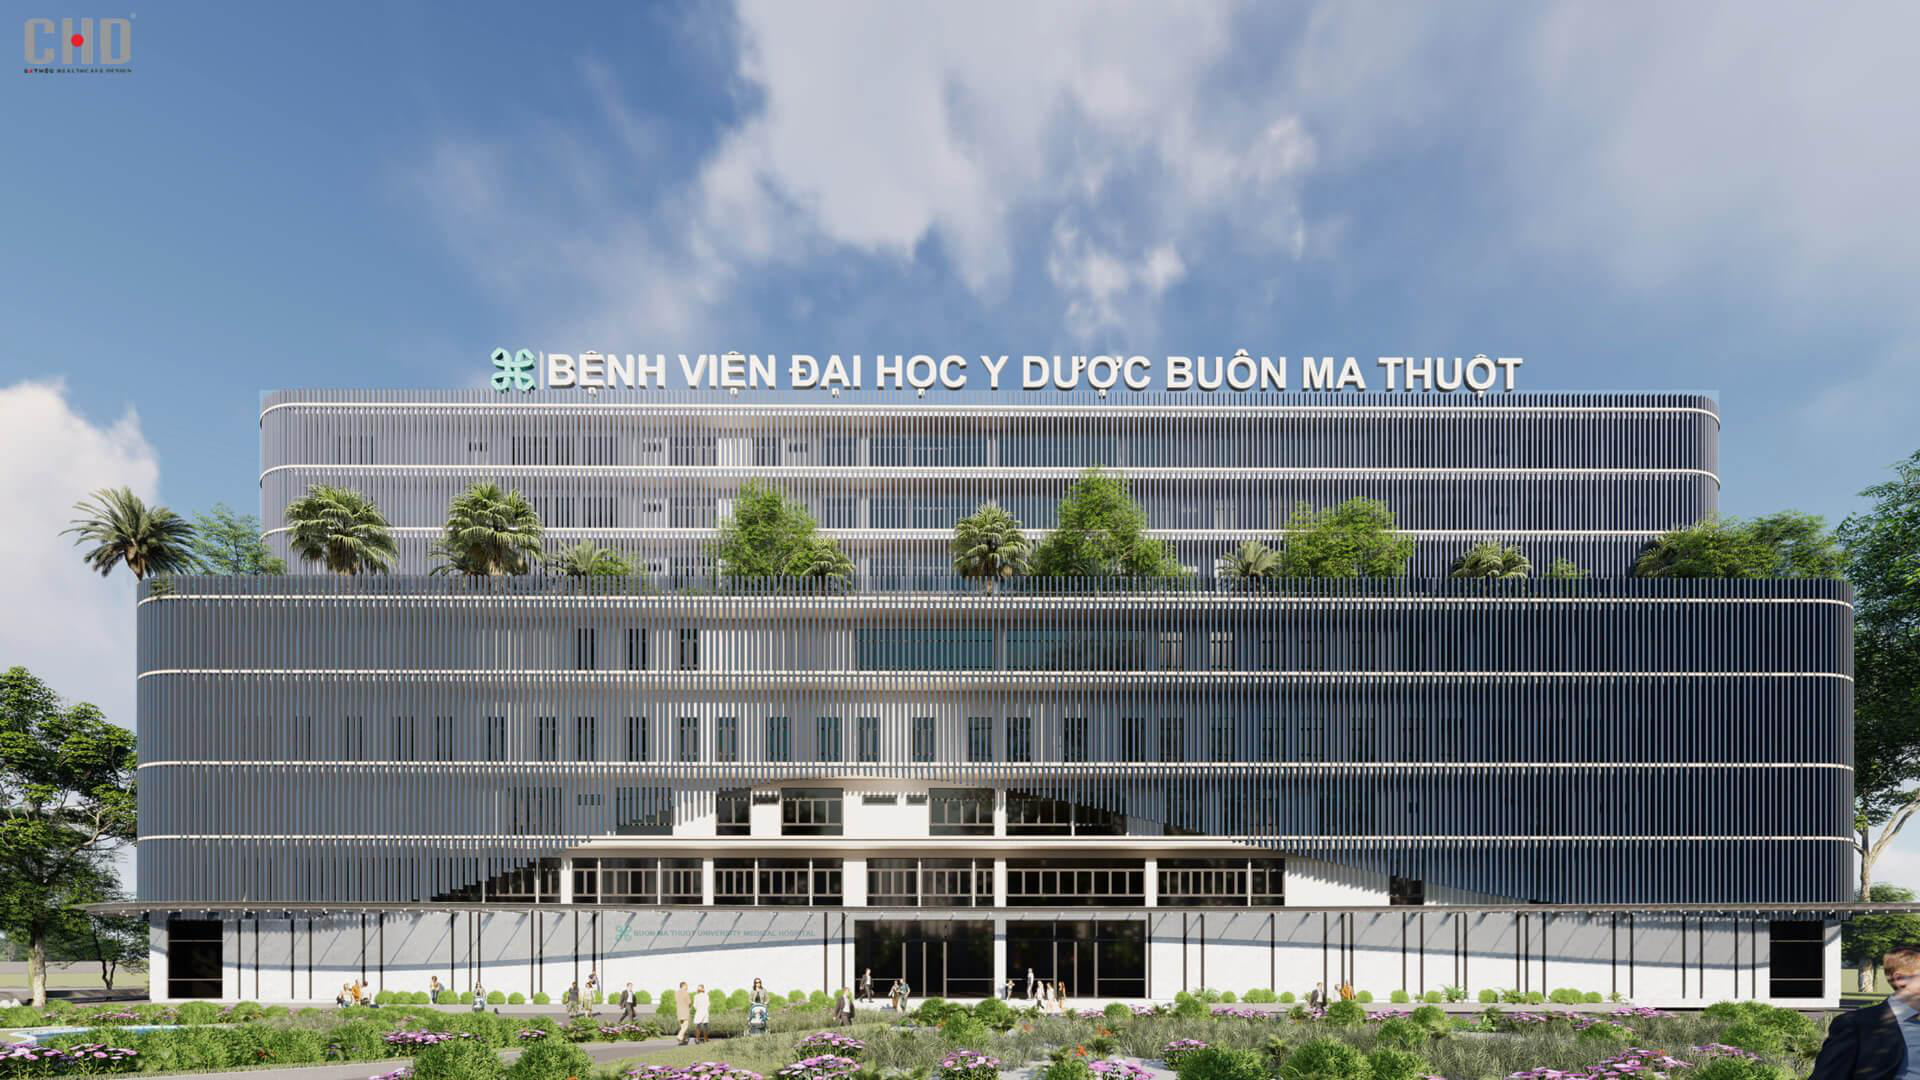 5 tiêu chí không thể thiếu khi chọn công ty thiết kế kiến trúc cho bệnh viện - Ảnh 6.